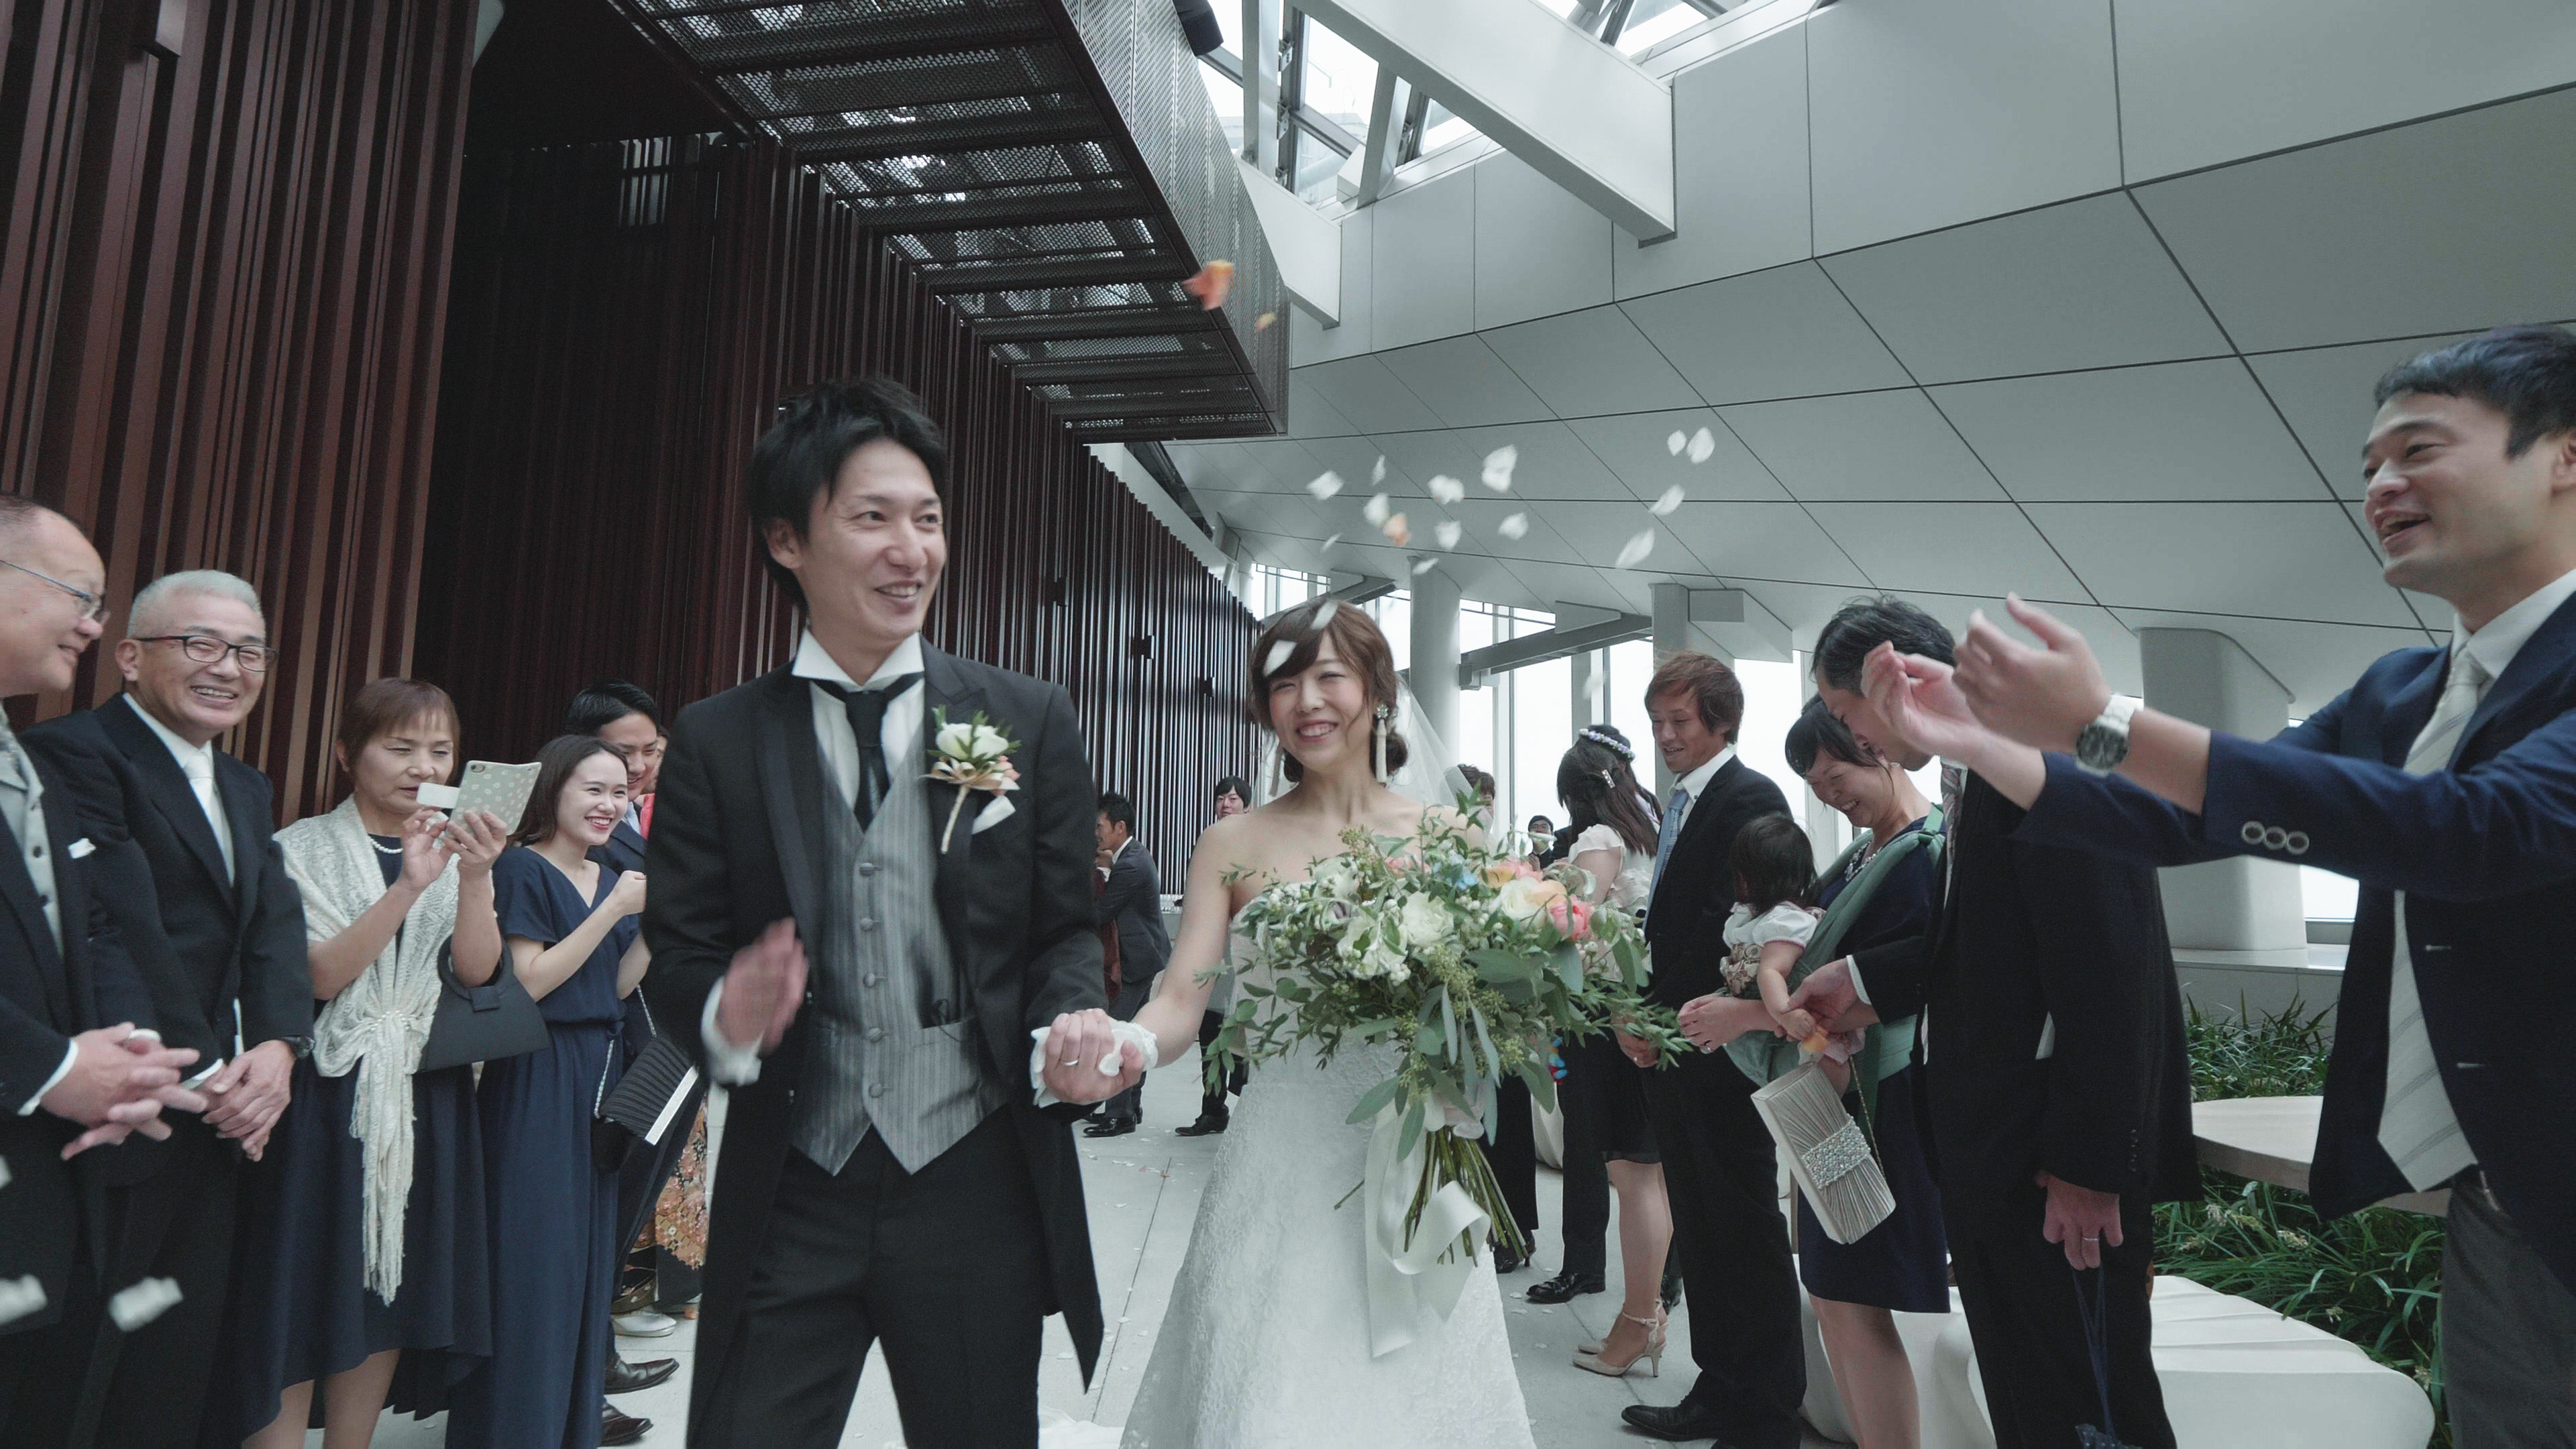 3rdeyeproject 福島市 郡山 仙台 結婚式 ビデオ ウェディング ムービー WEDDING ANdAZ Tokyo